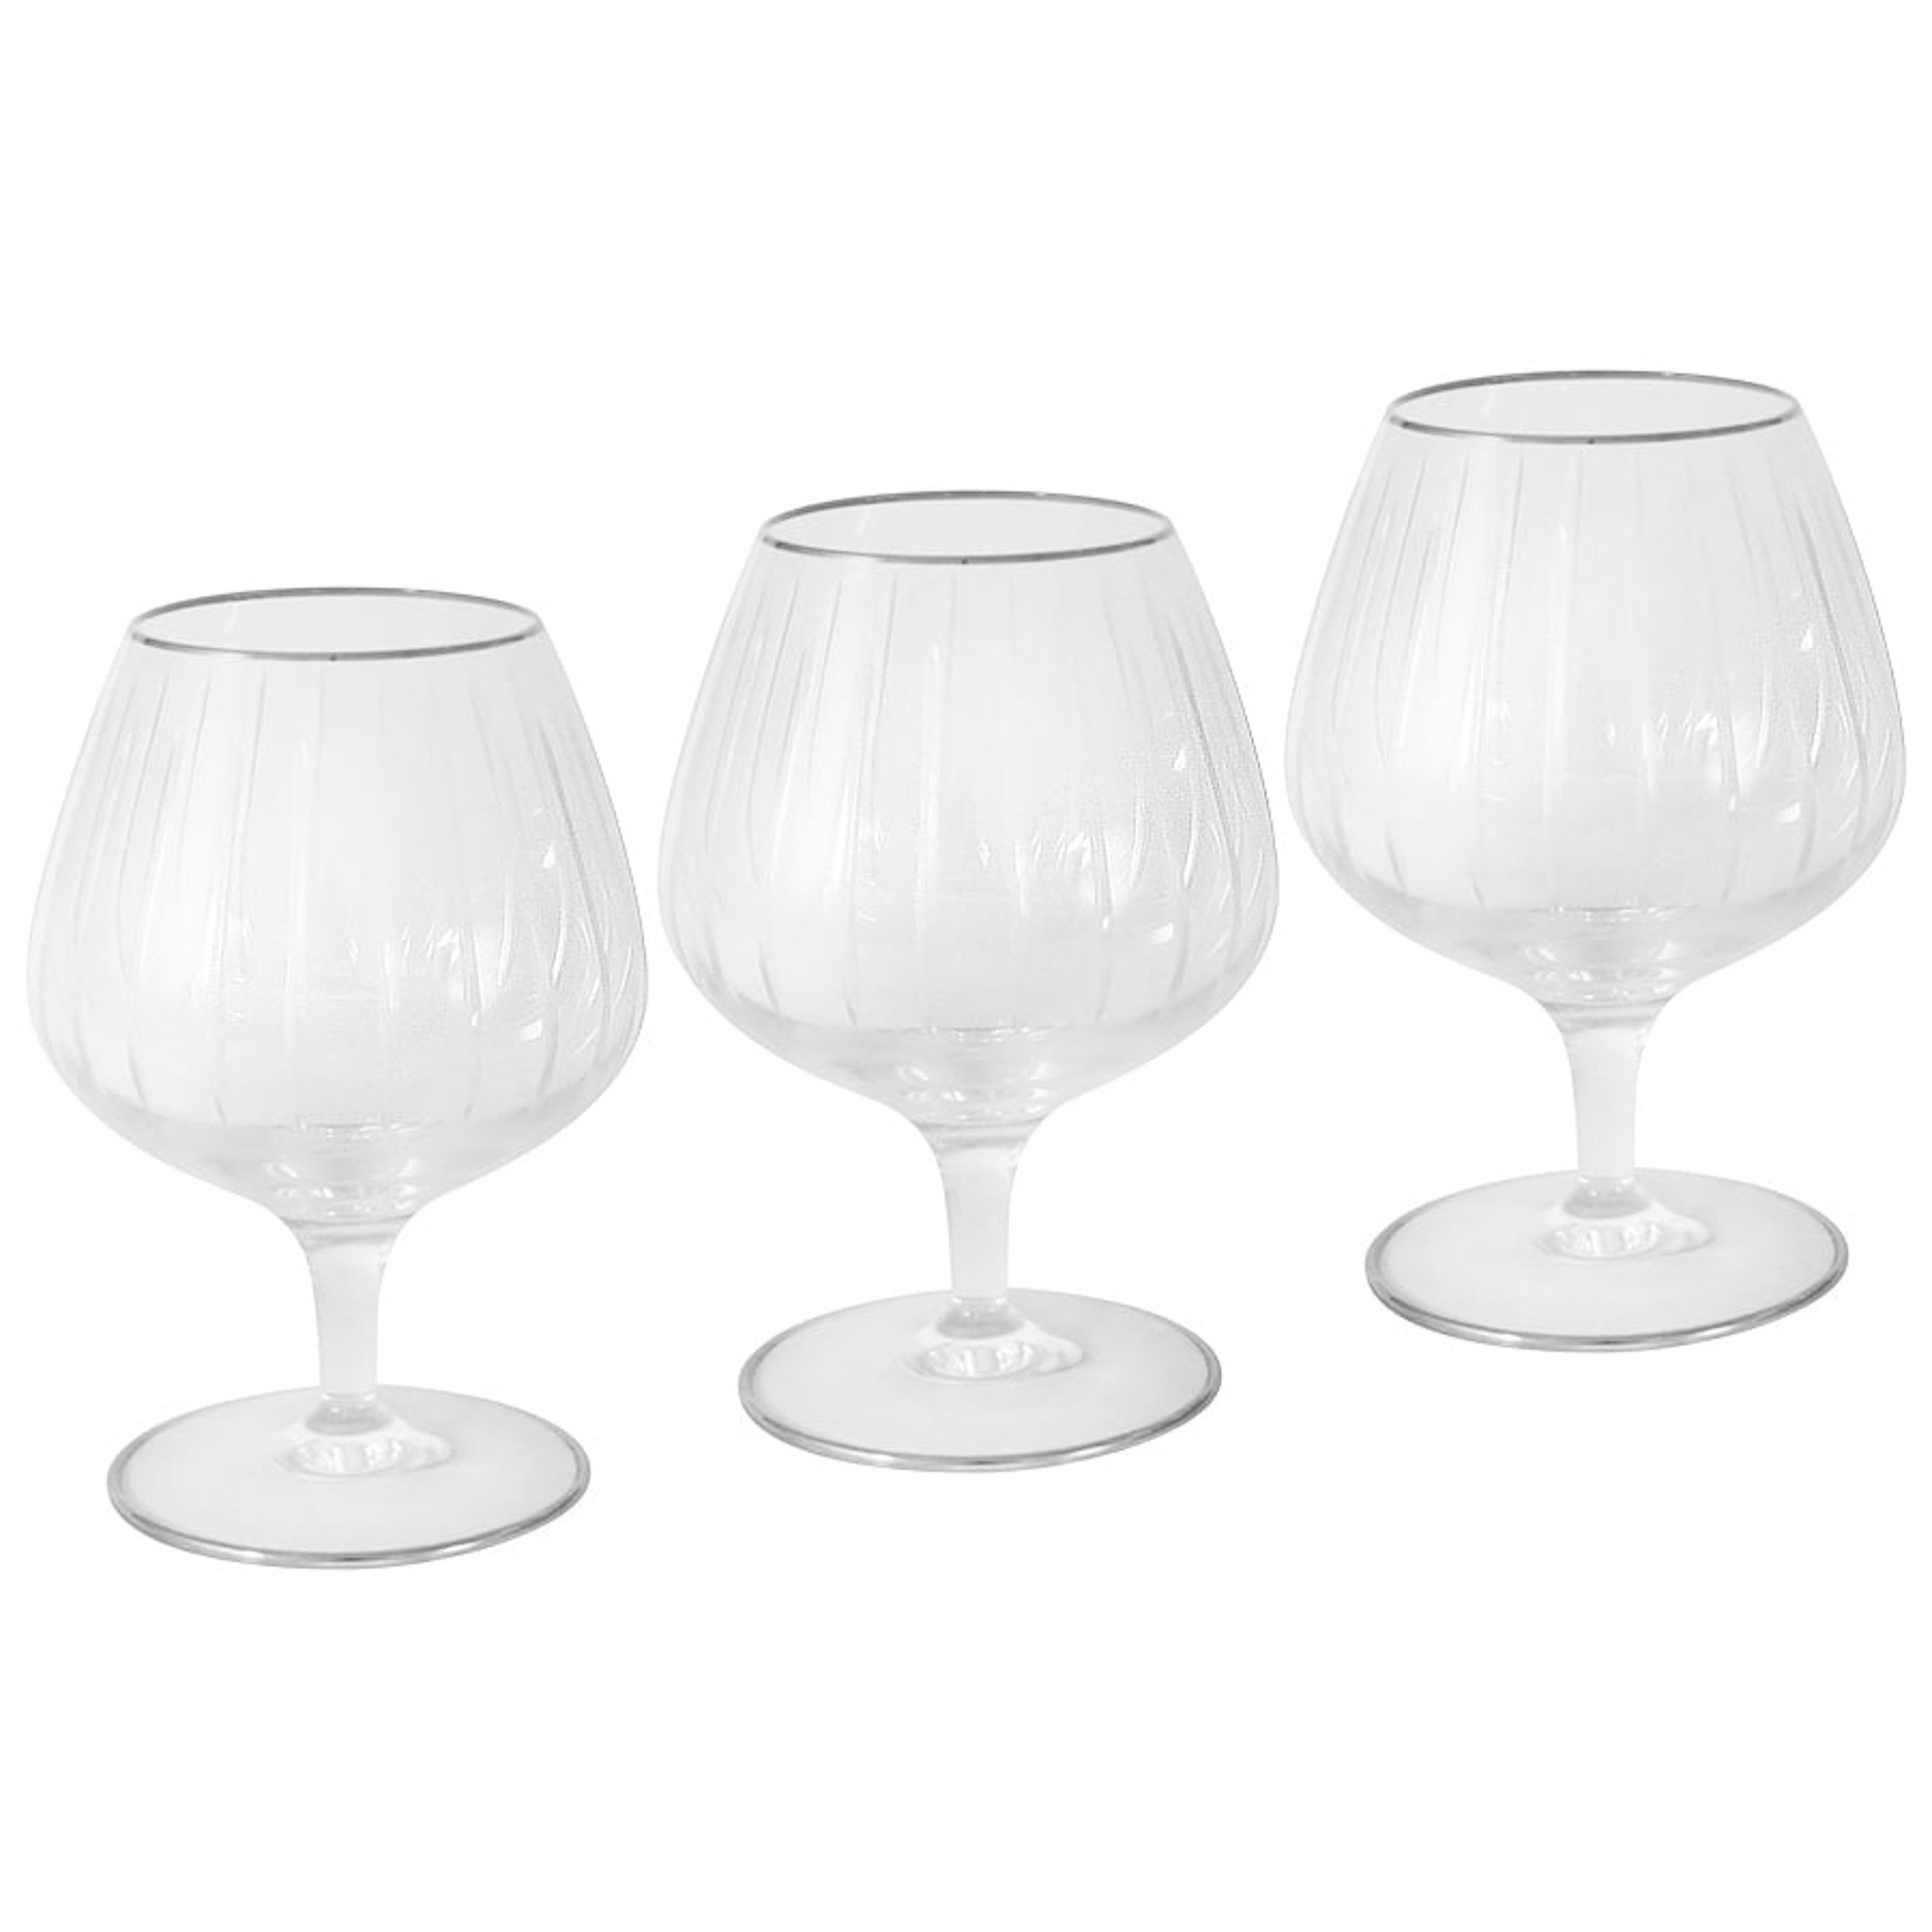 Набор бокалов для коньяка Same Пиза серебро 6 шт. подарочный набор бокалов для коньяка представительский